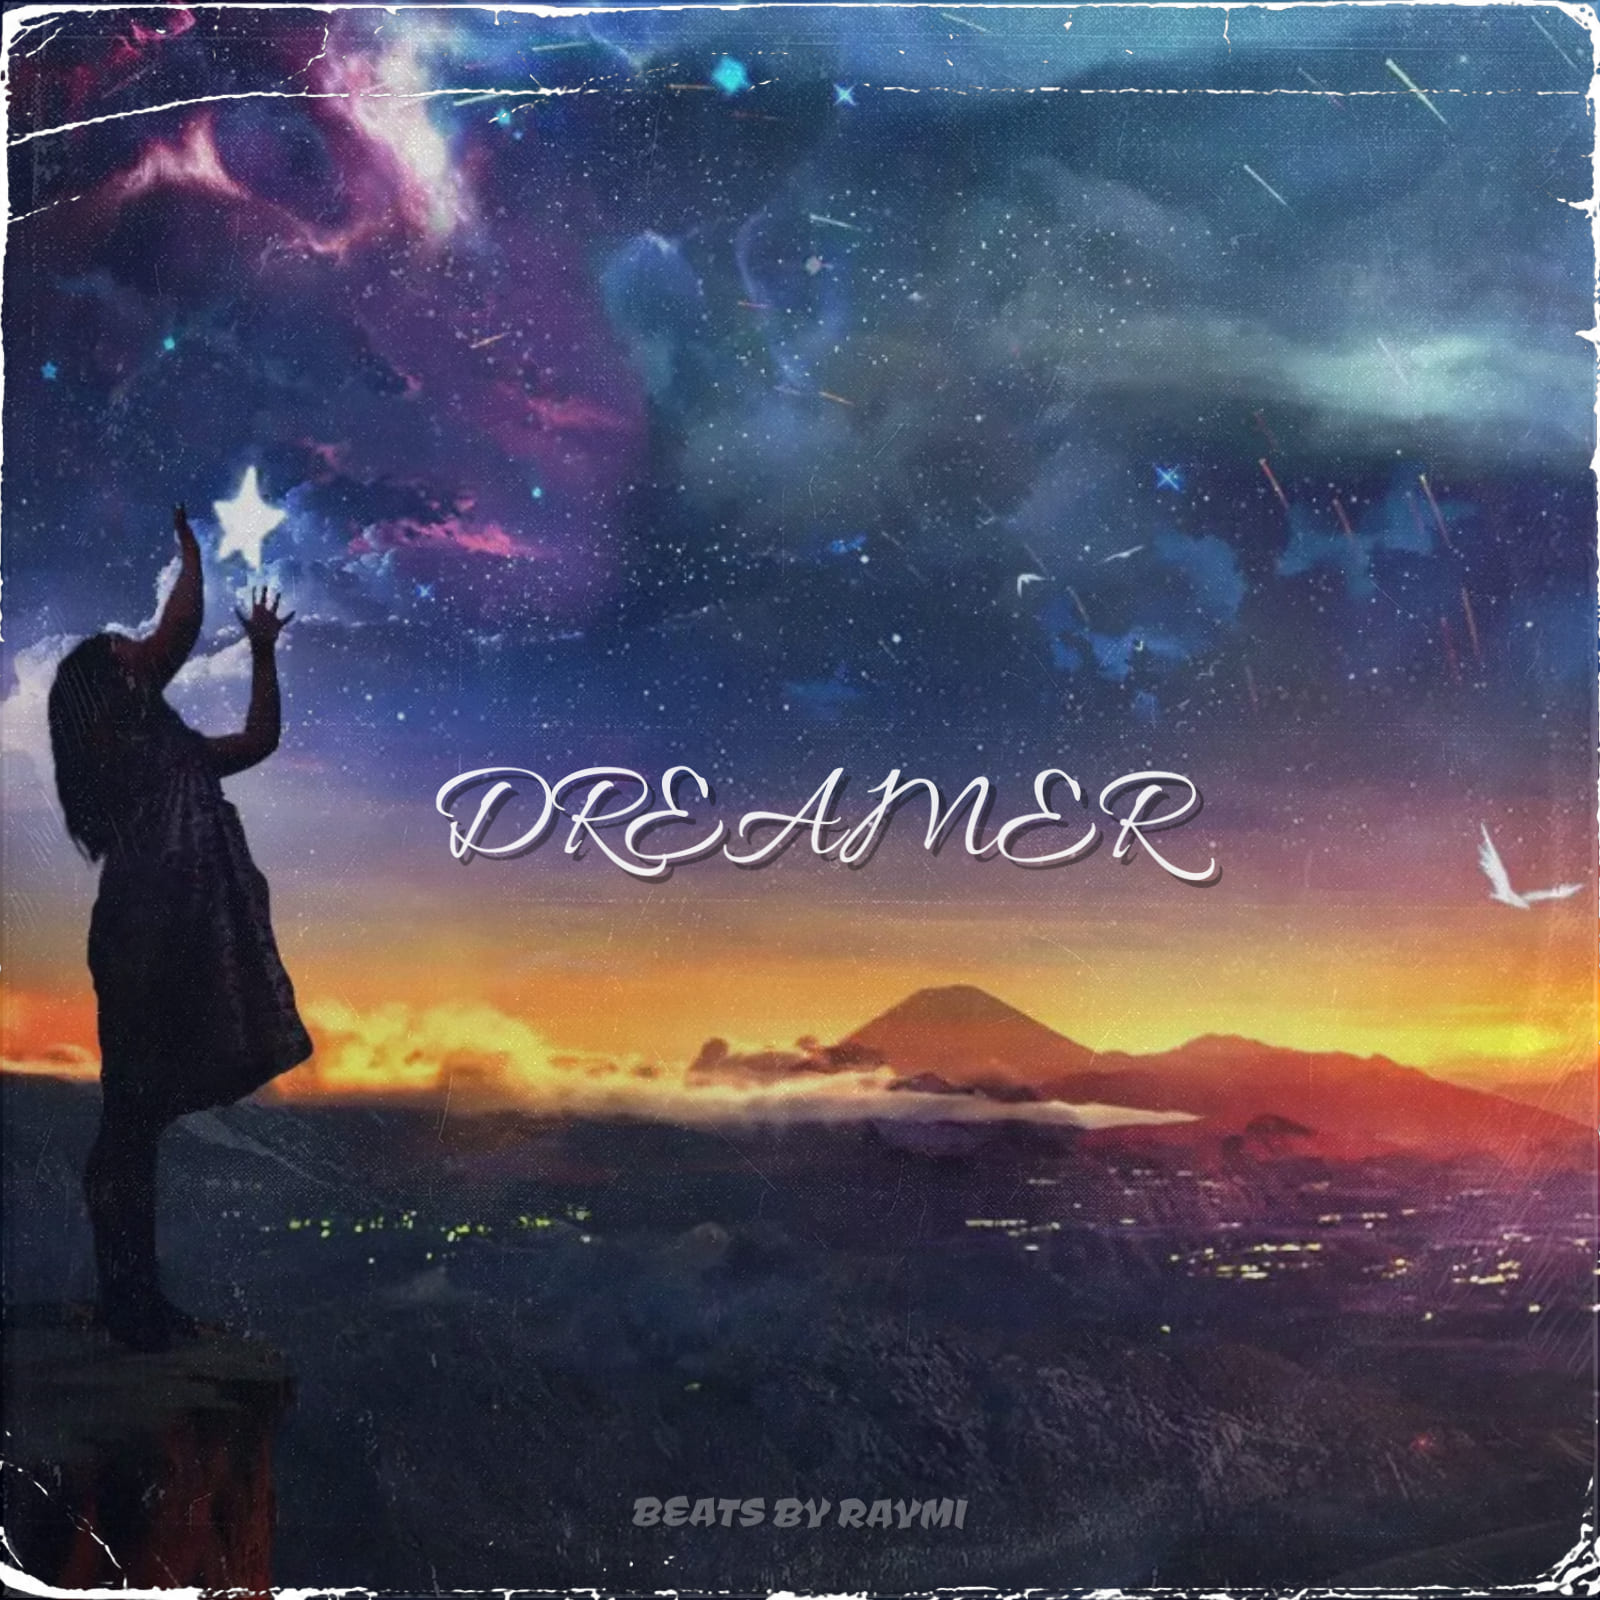 обложка бита, Raymi, музыка, cover, Dreamer (красивый, мечтательный pop бит)